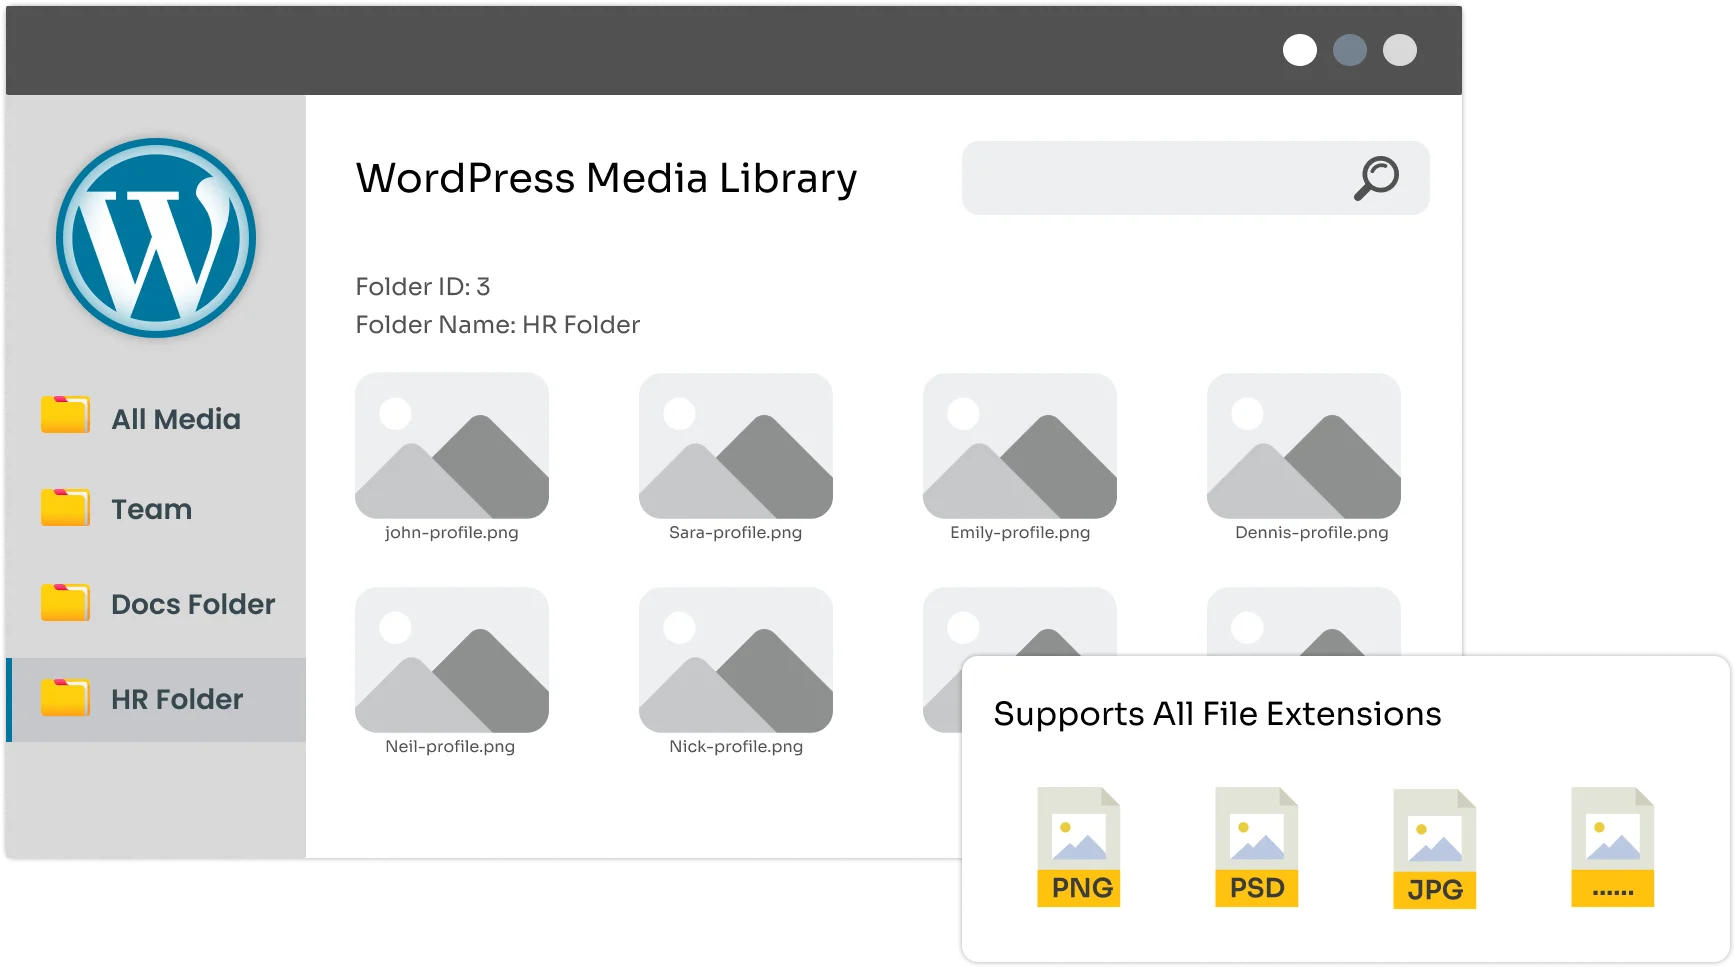 Gestión y restricción de medios de WordPress: organizar la biblioteca